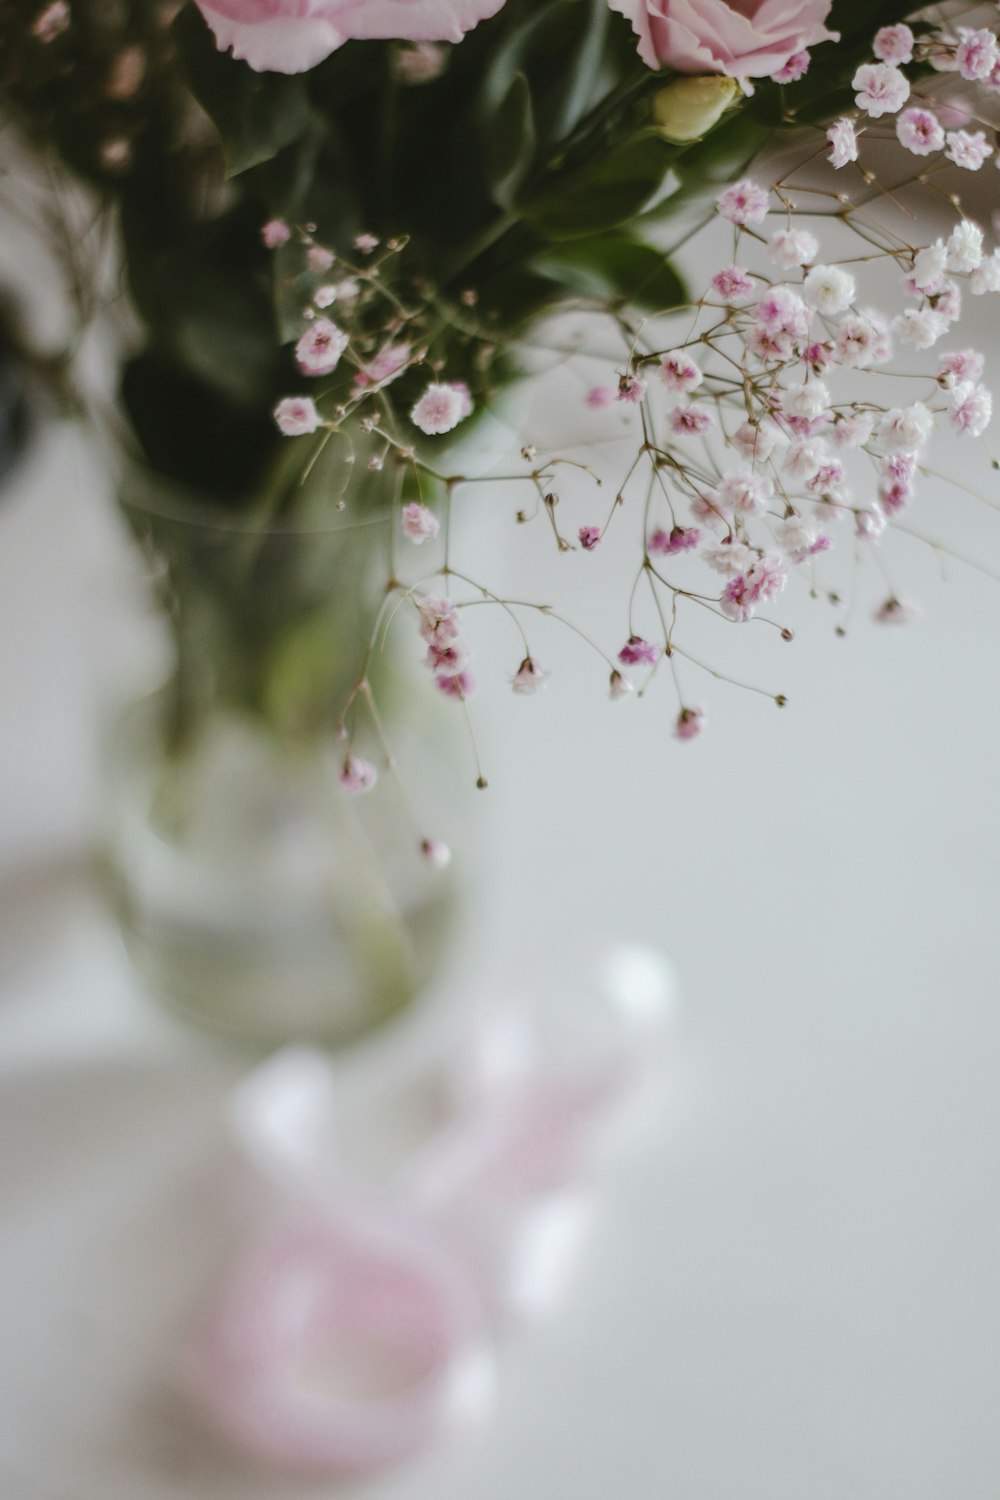 fiori bianchi e rosa in vaso di vetro trasparente